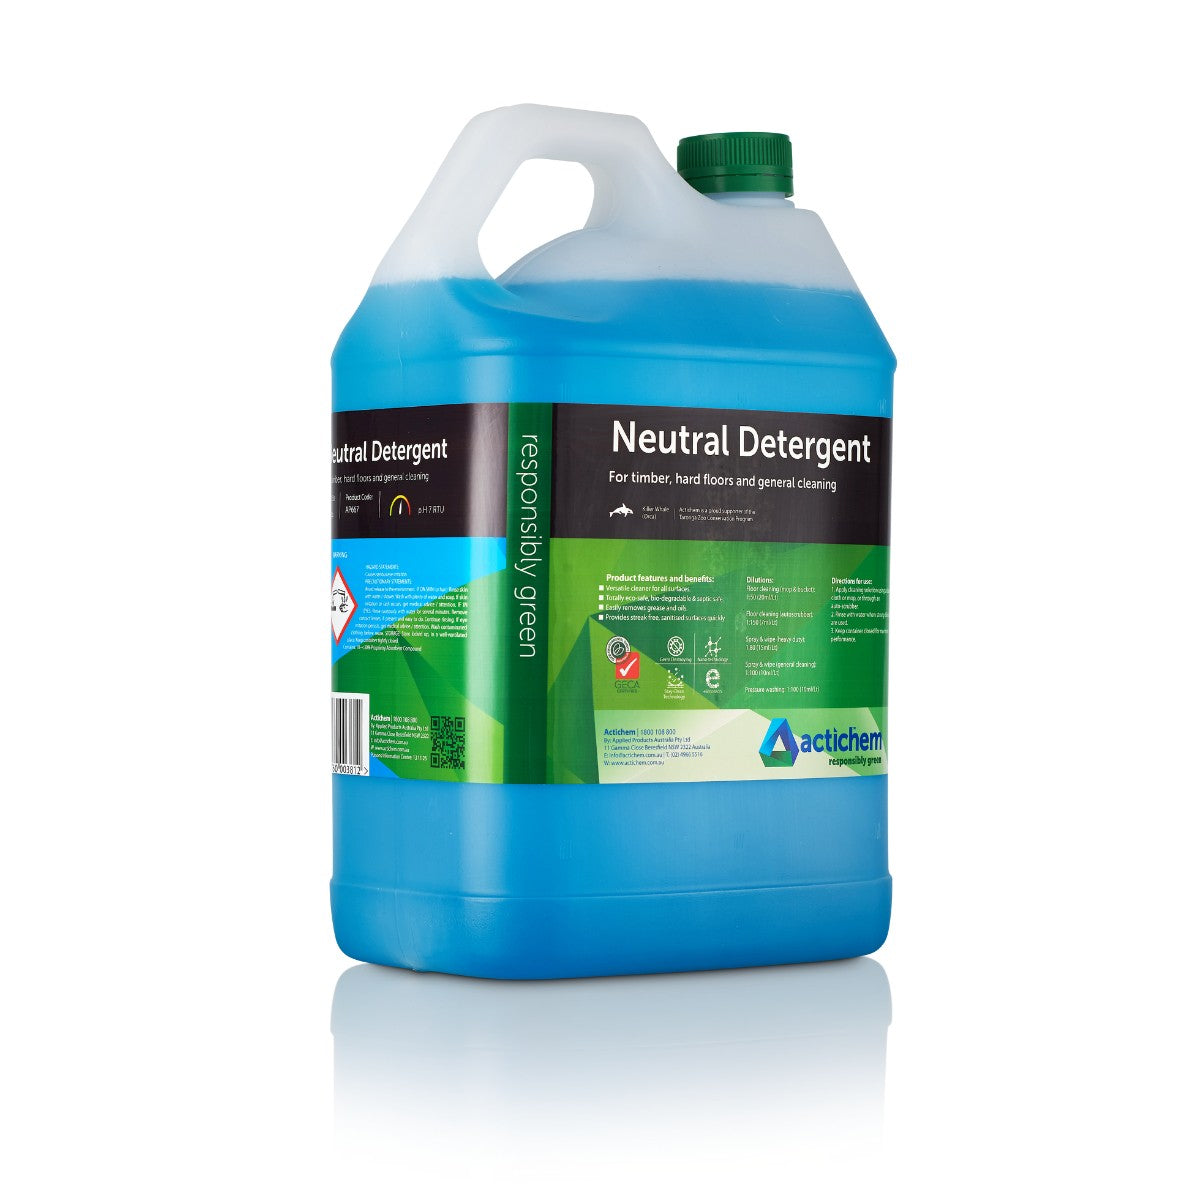 Actichem Neutral Detergent RG667